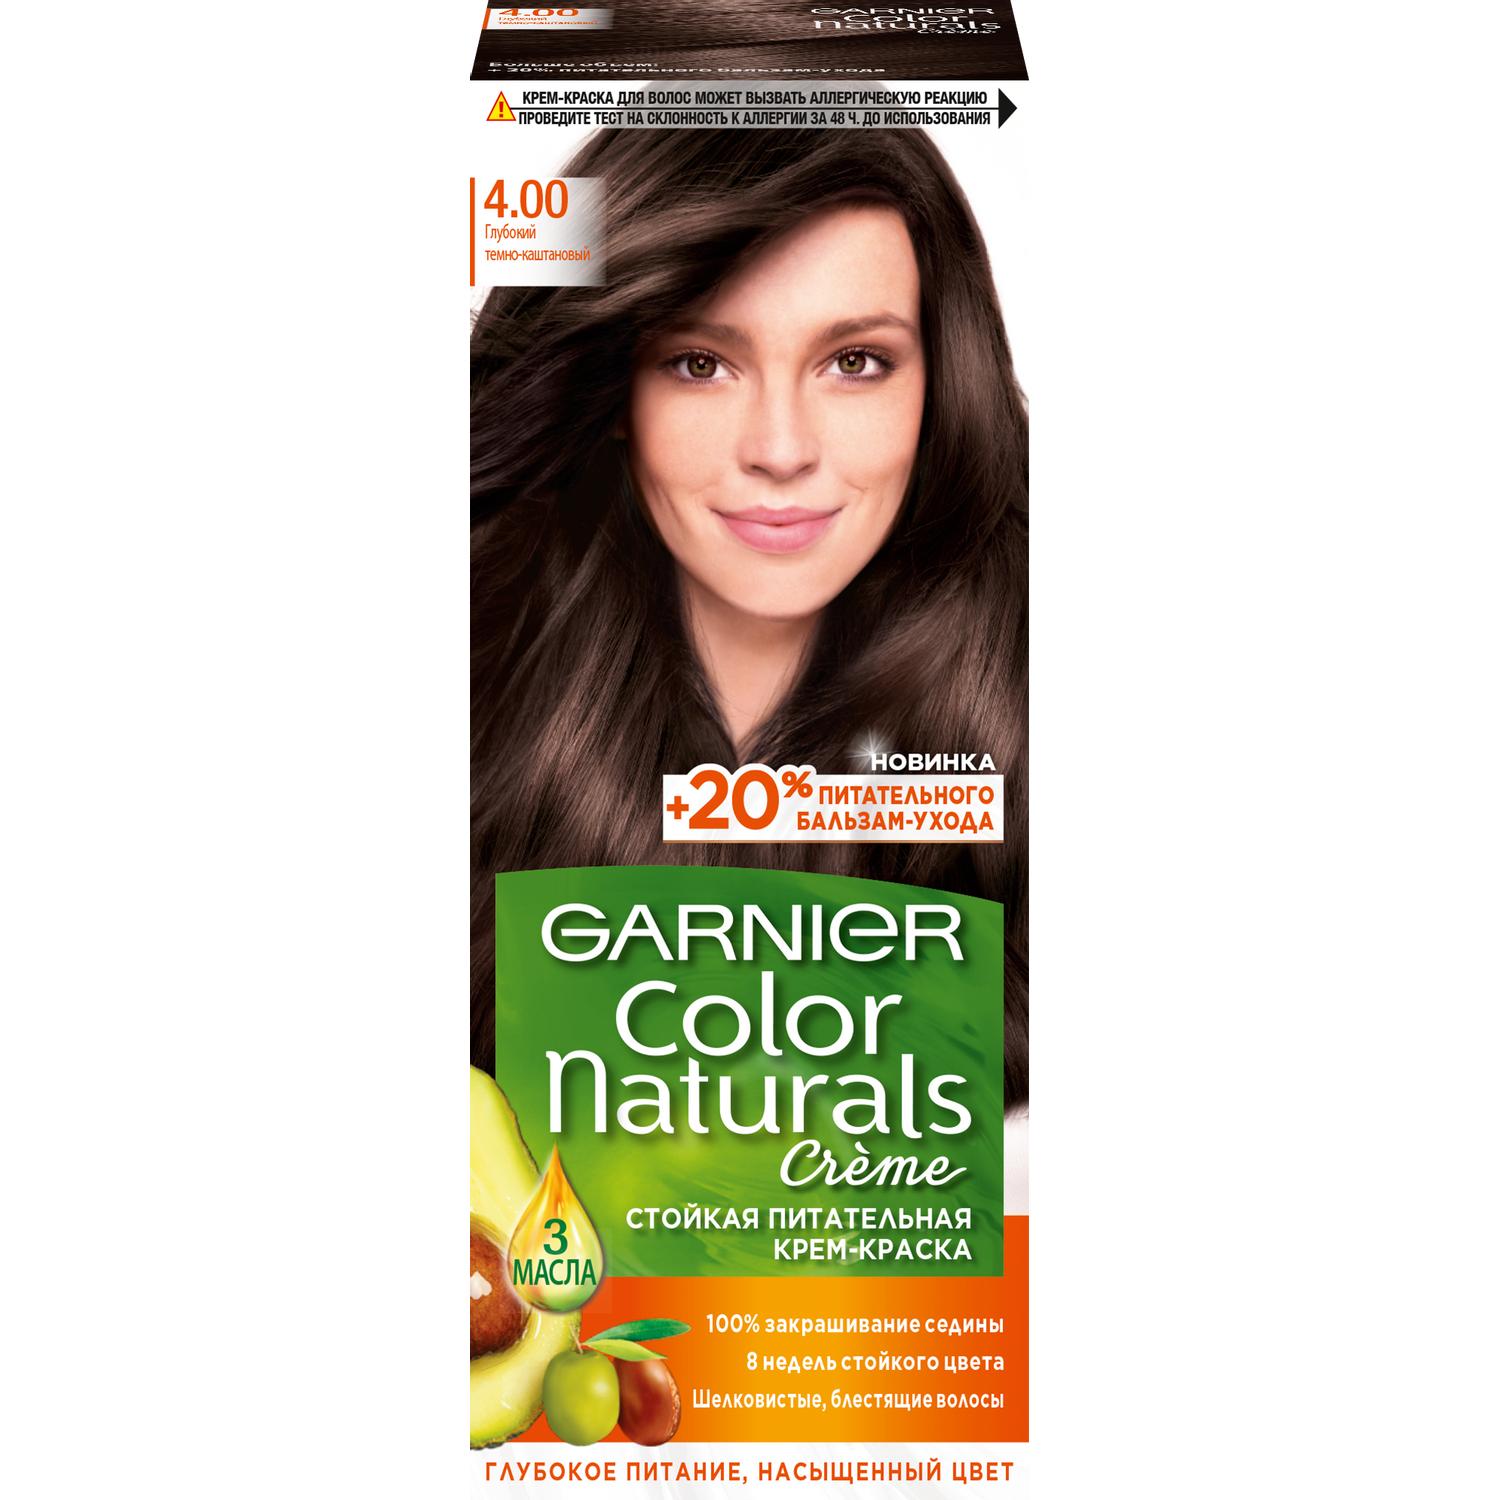 Крем-краска для волос Garnier Color Naturals 4.00 Глубокий темно-каштановый 110 мл краска мусс для волос schwarzkopf perfect mousse 700 темно русый